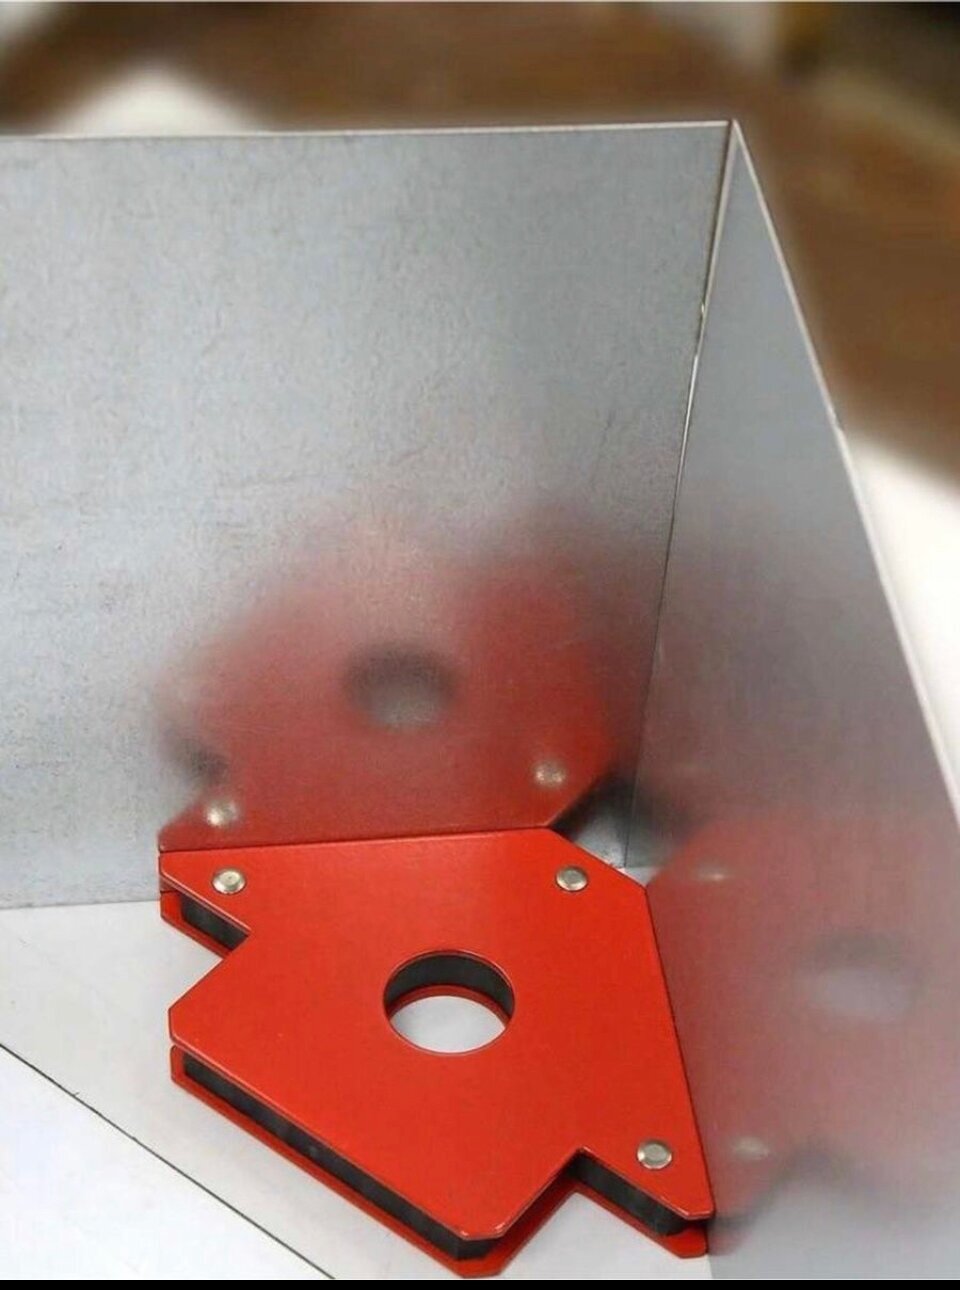 Магнитные угольники для сварки 6  красный с ферритовым магнитом